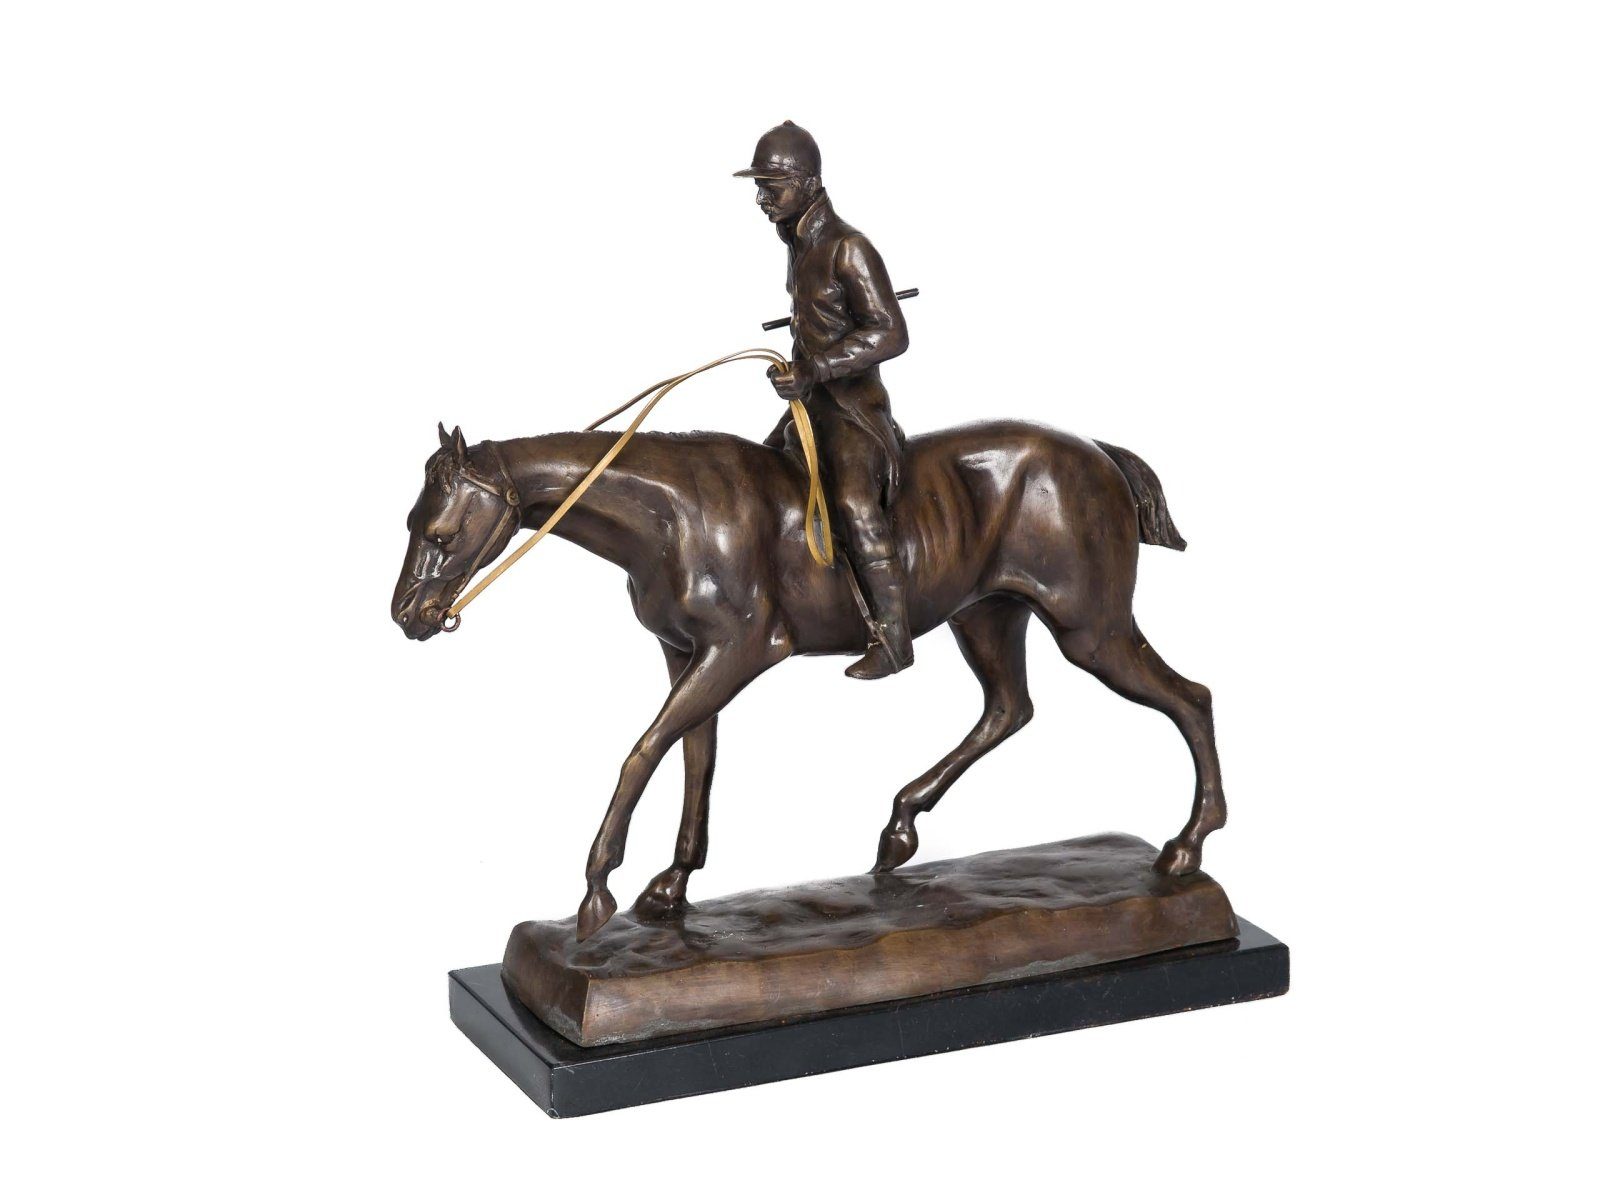 Figur Aubaho Reiter Pferd Bronze 9,4 Bronze Skulptur Skulptur kg Bronzeskulptur Jockey